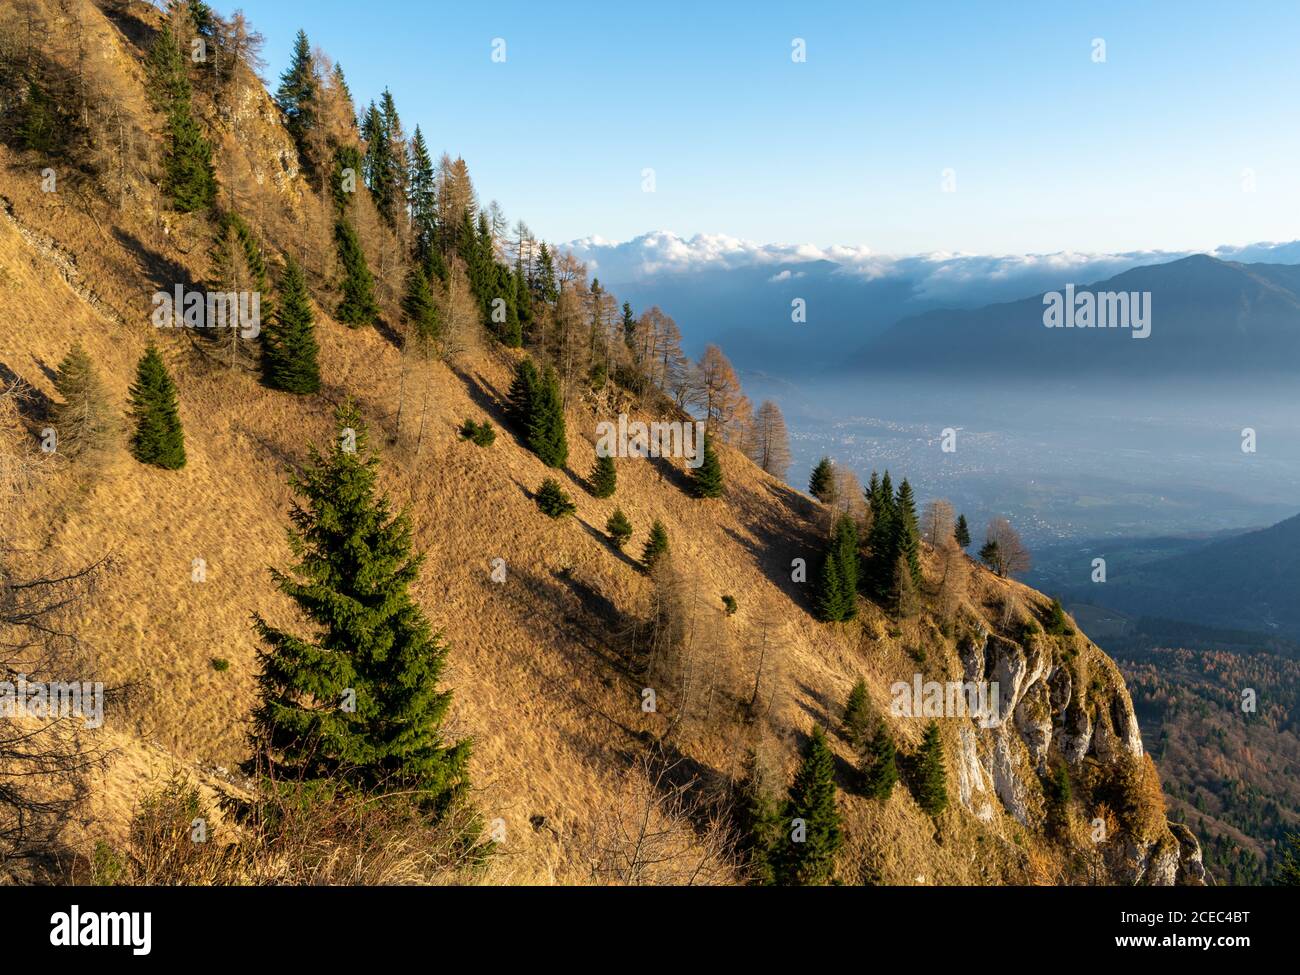 Montagne couverte d'arbres aux couleurs de l'automne et éclairée par les rayons du soleil couchant. Aperçu de la vallée au loin. Belluno, Italie Banque D'Images